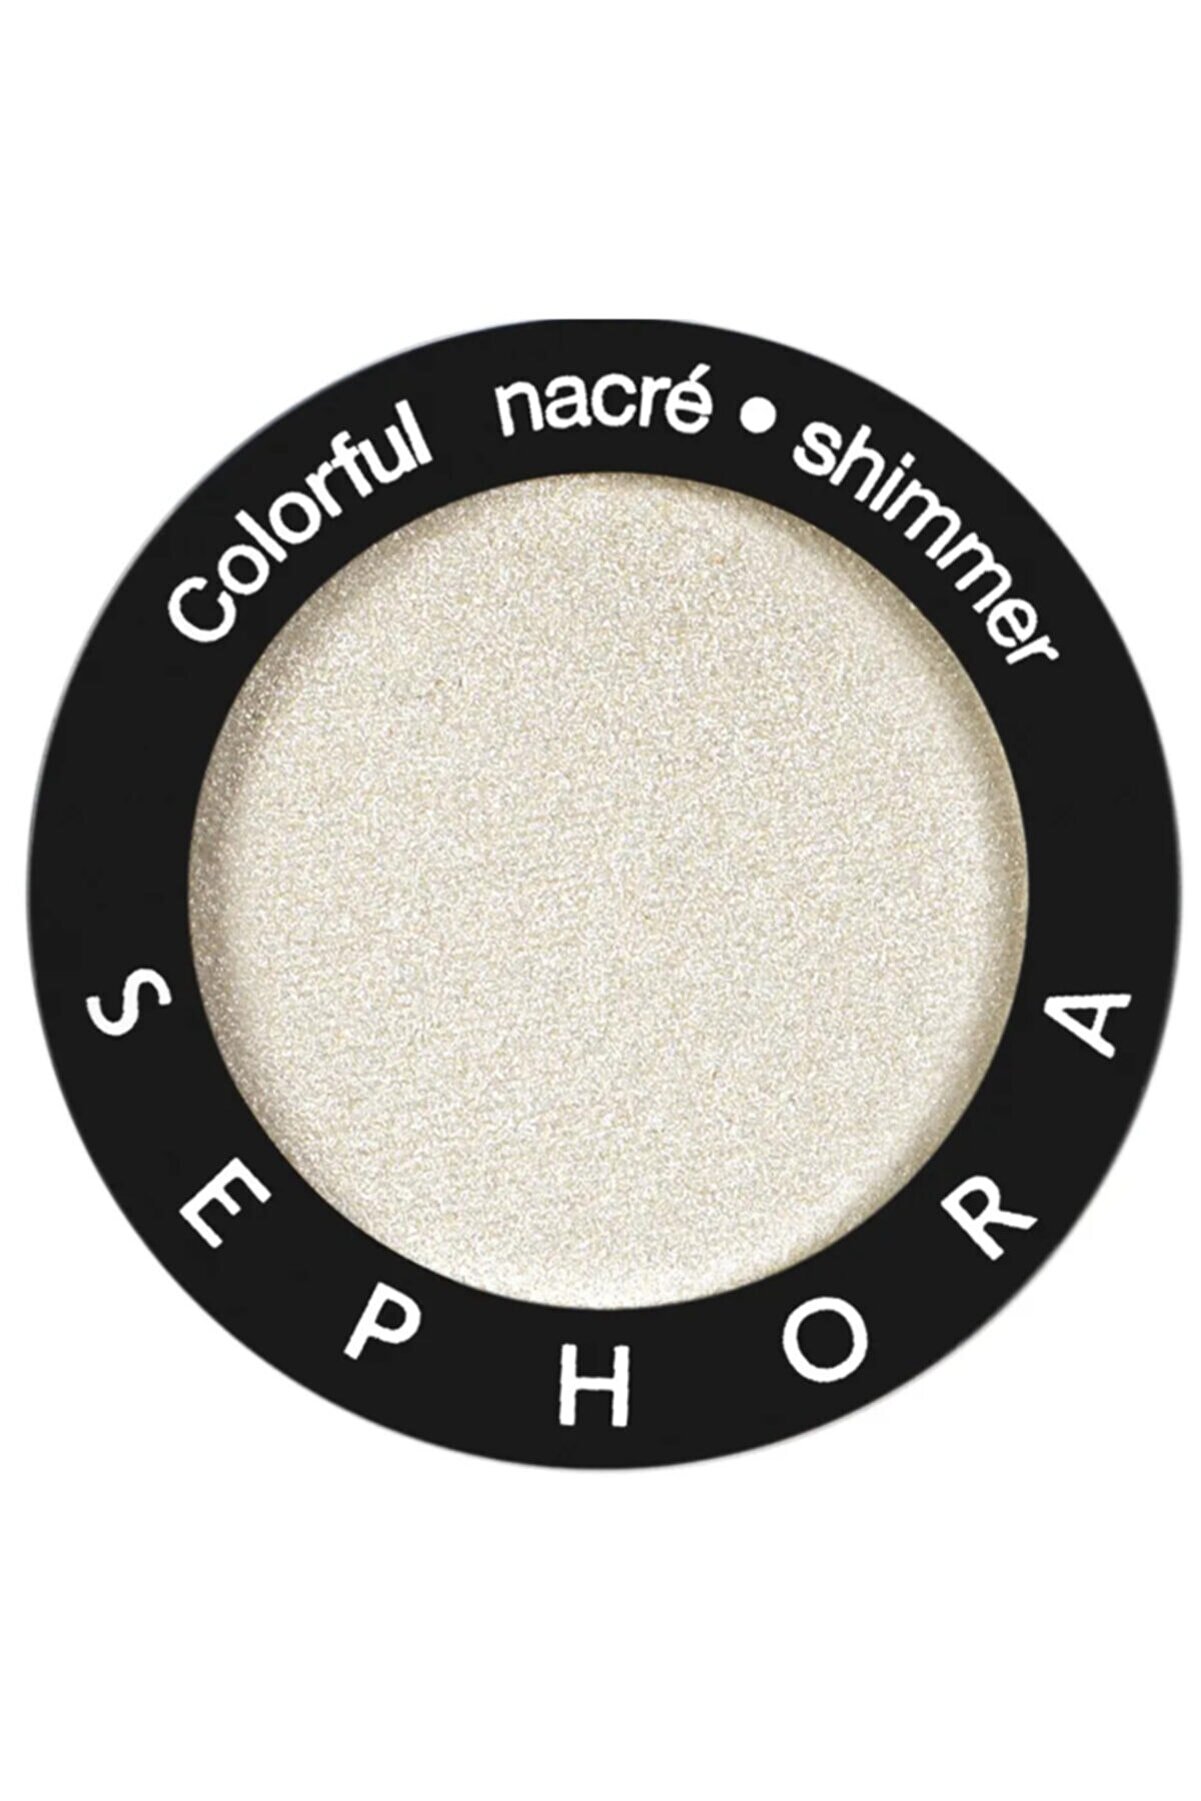 Sephora Colorful Tekli Göz Farı